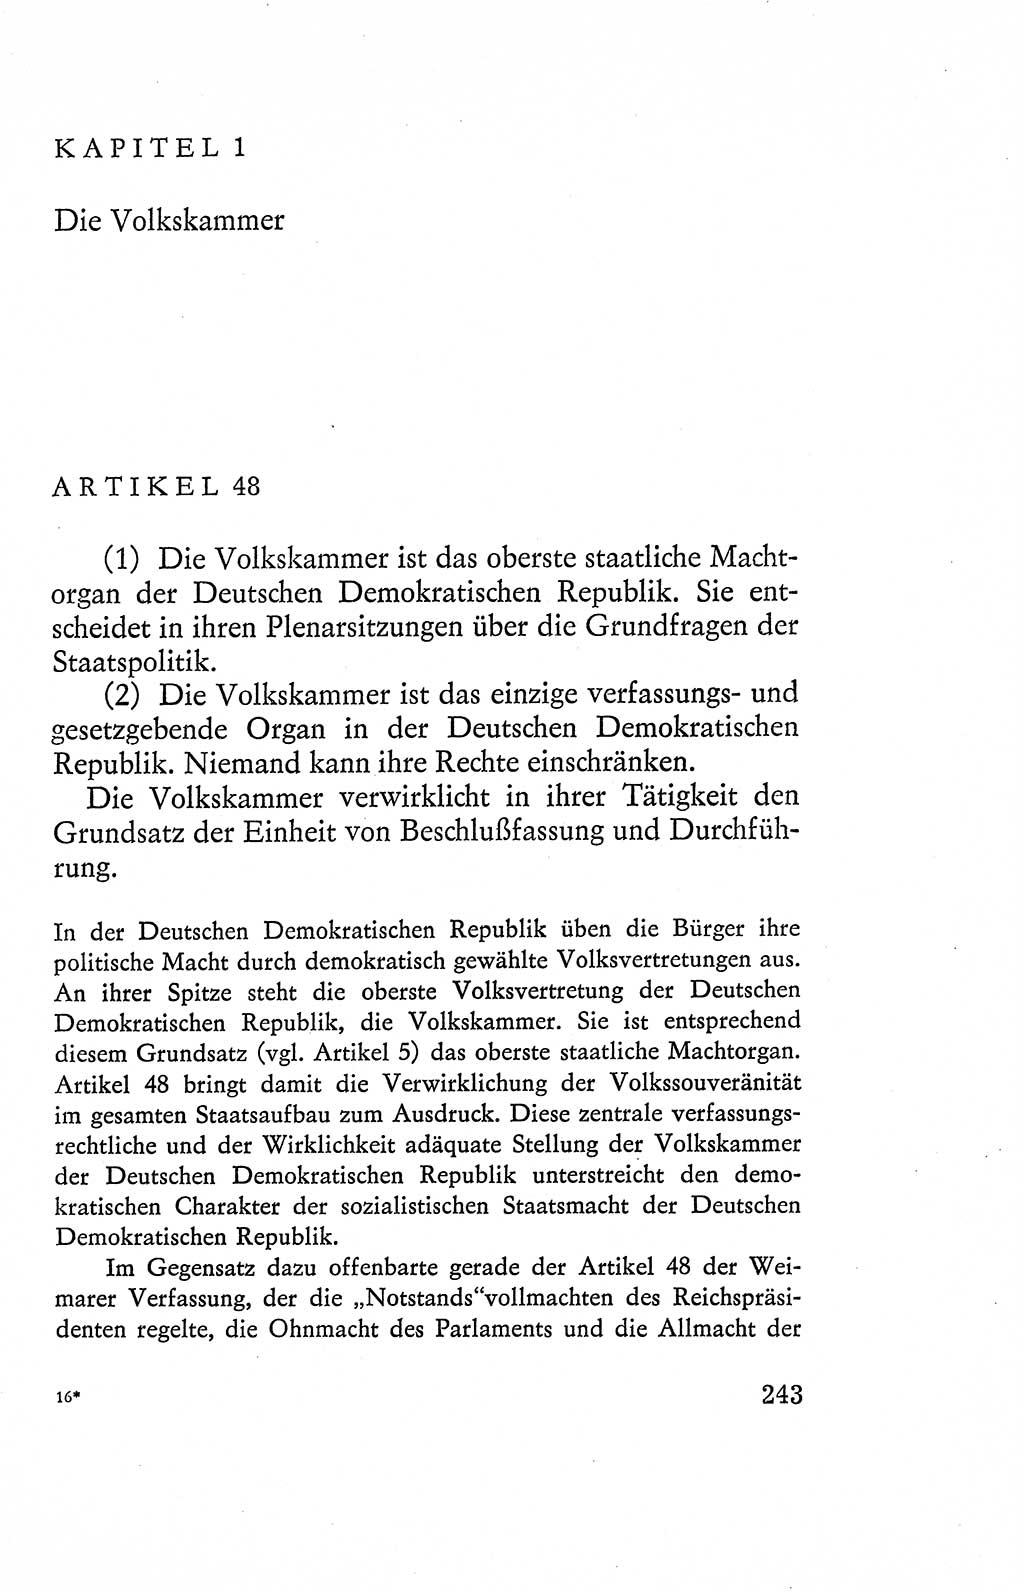 Verfassung der Deutschen Demokratischen Republik (DDR), Dokumente, Kommentar 1969, Band 2, Seite 243 (Verf. DDR Dok. Komm. 1969, Bd. 2, S. 243)